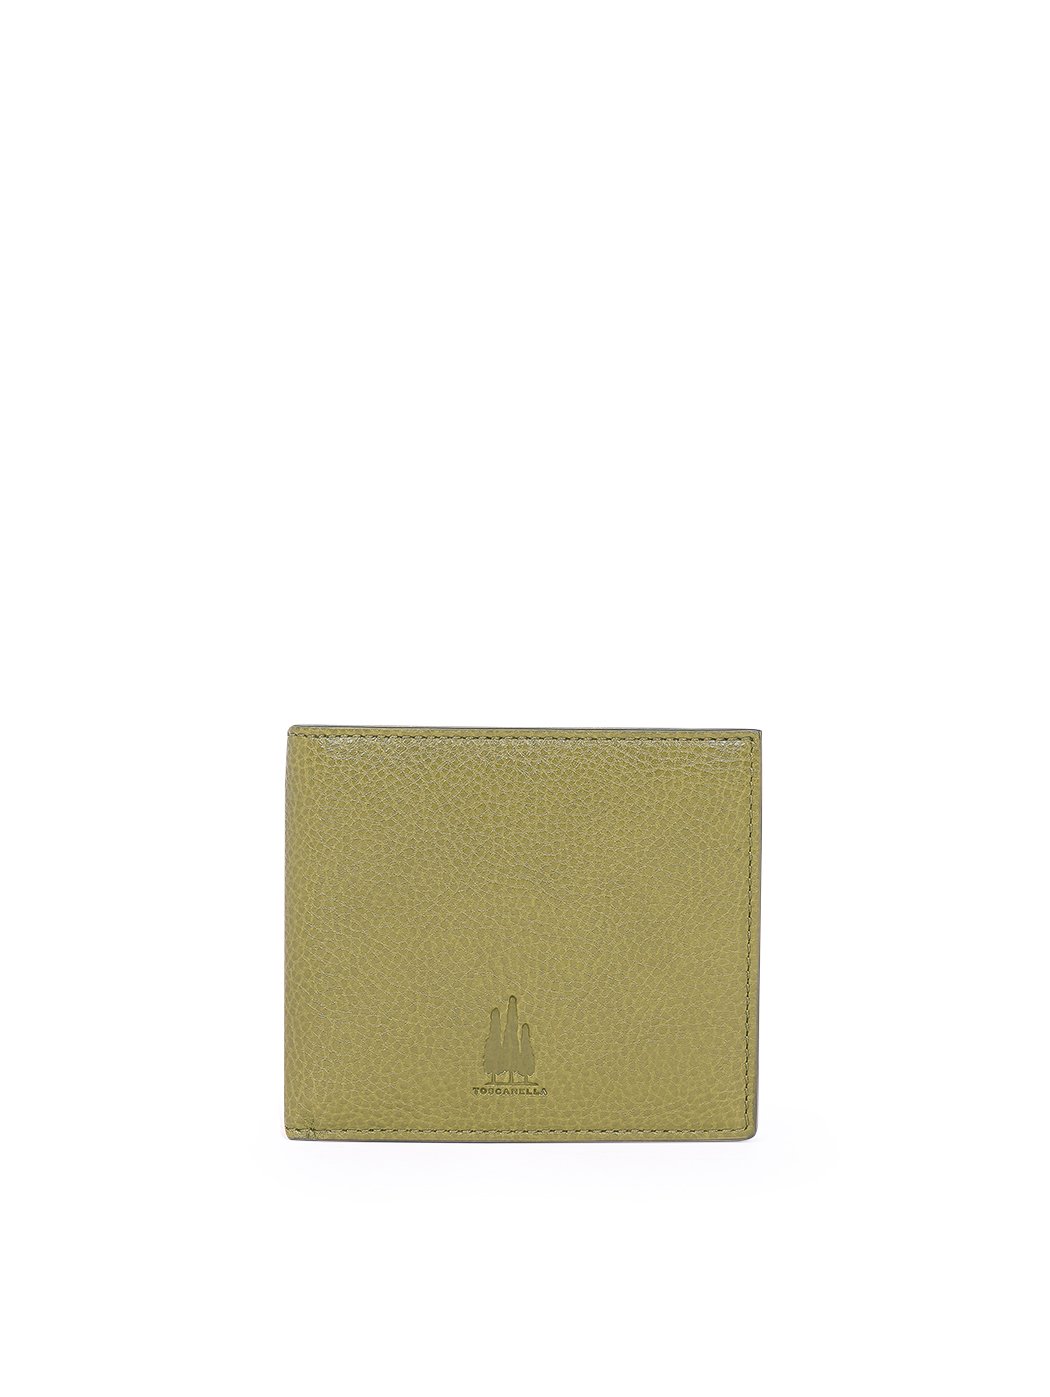 Кожаный кошелек с 8 слотами под карточки оливковый зеленый